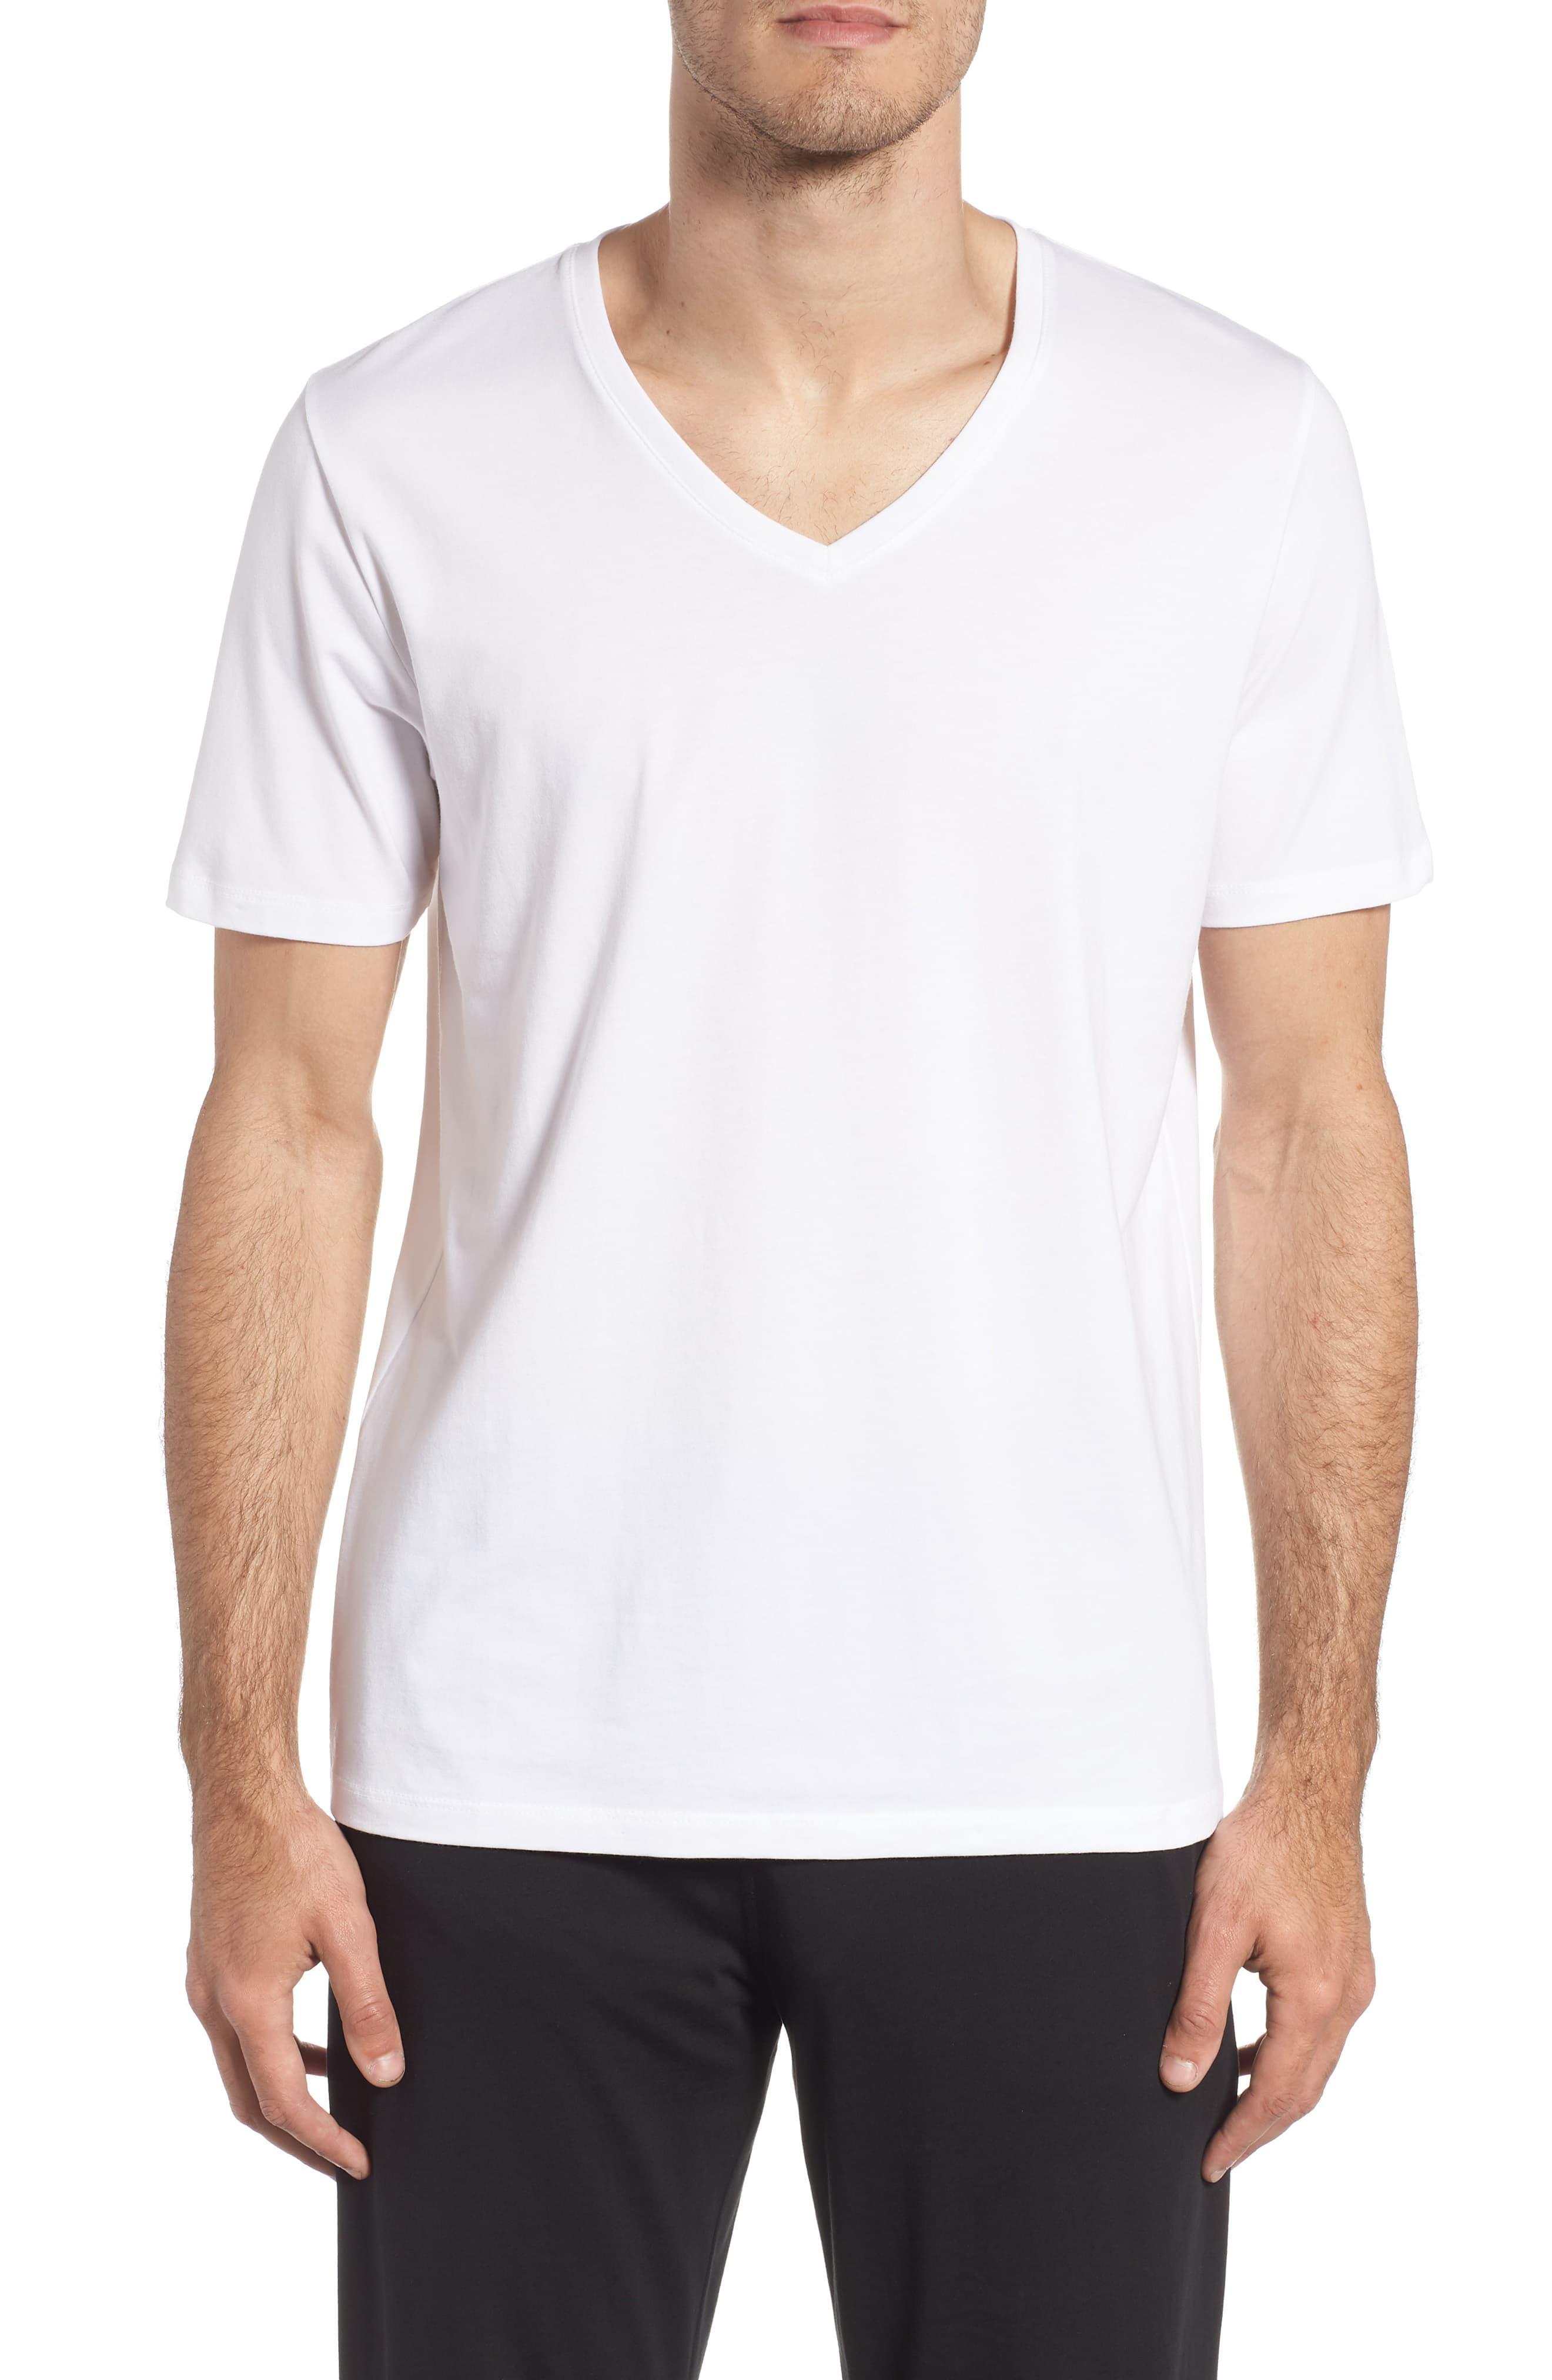 Tommy John Cotton Second Skin V-neck T-shirt in White for Men - Lyst